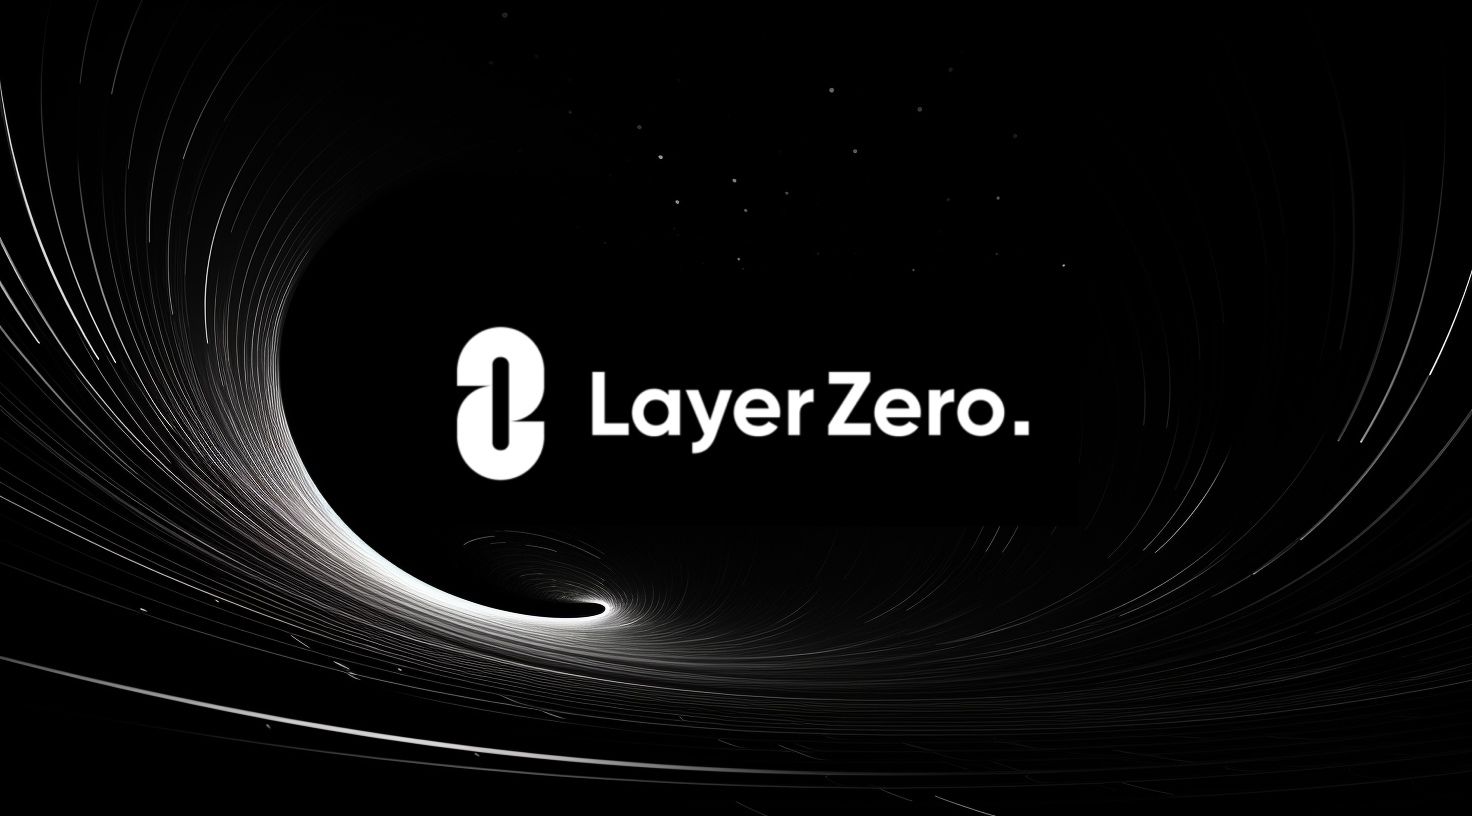 Trong bài đăng, LayerZero cho biết rằng dịch vụ này sẽ tối ưu hóa tương tác của người dùng với các ứng dụng phi tập trung và giao thức trên nhiều blockchain